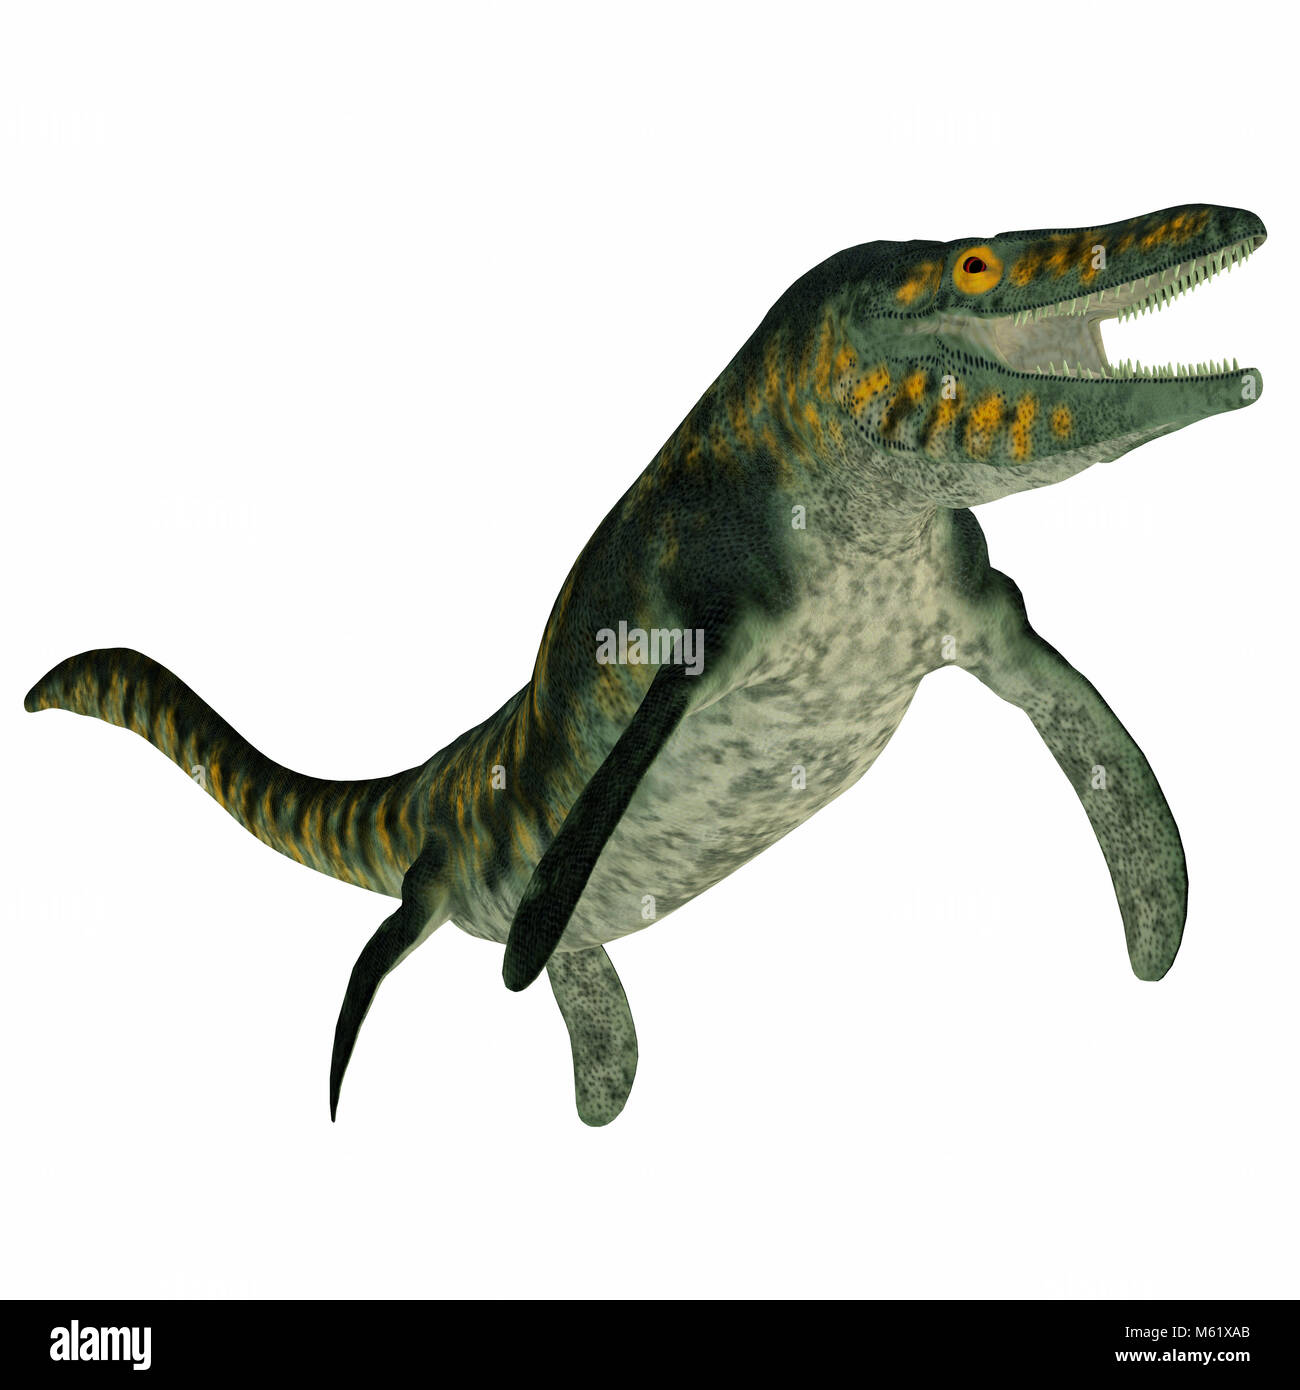 Tylosaurus War Eine Fleischfressende Marine Reptil In Der